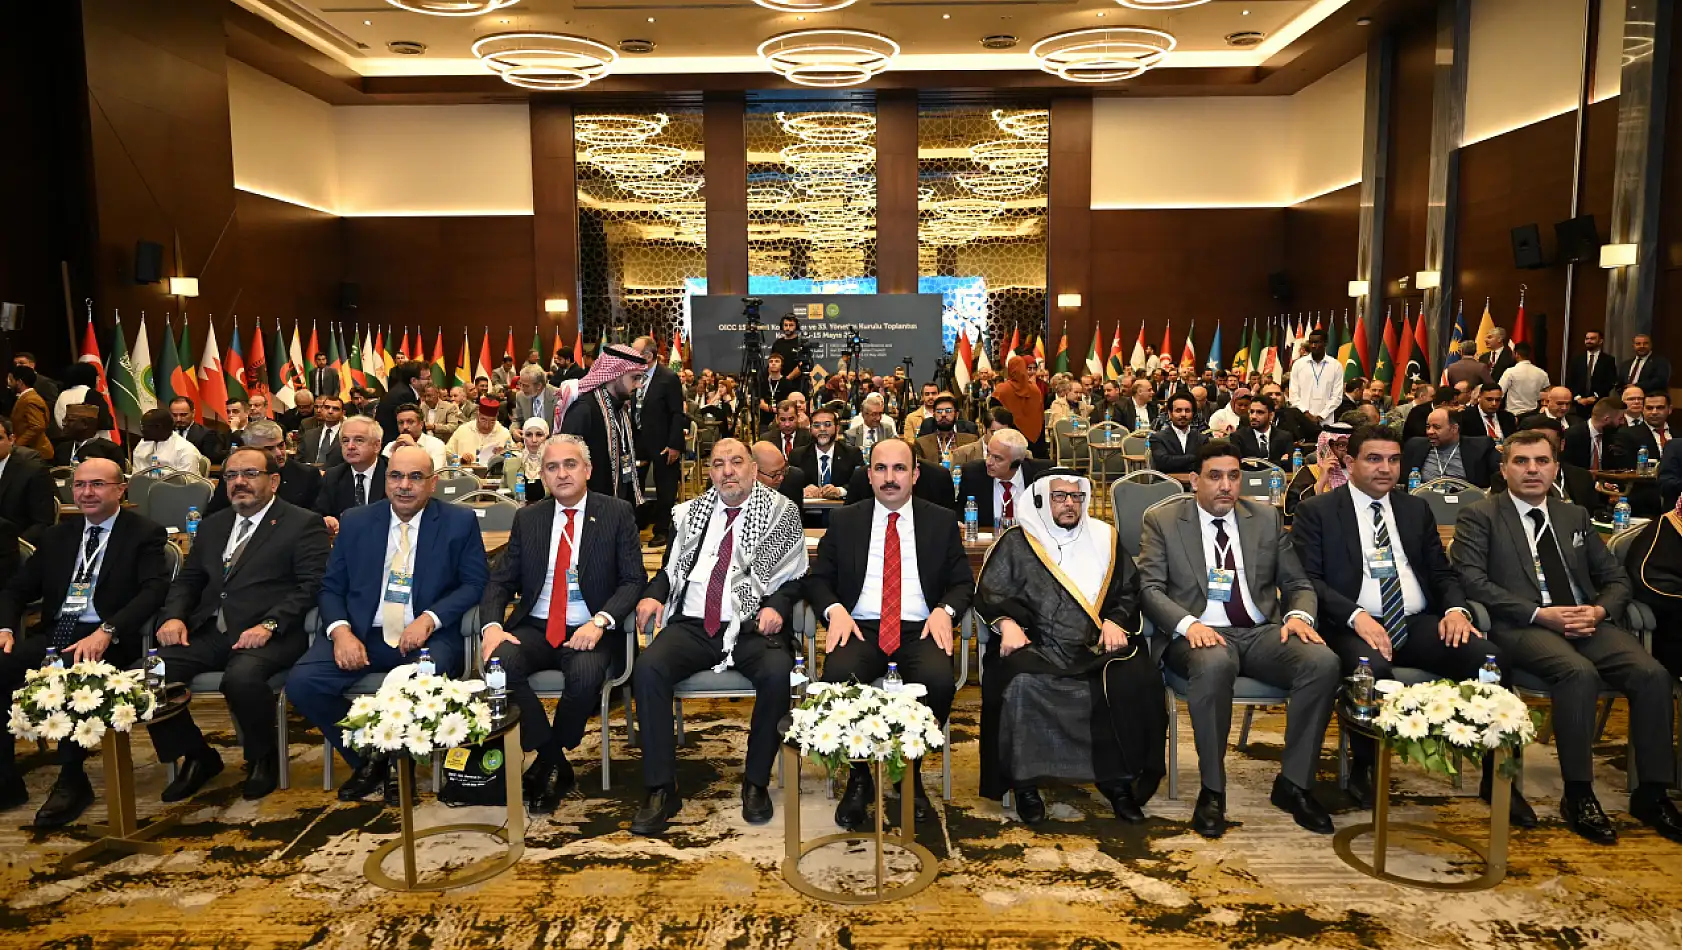 İslam Dünyası OICC Genel Konferansı için Konya'da buluştu